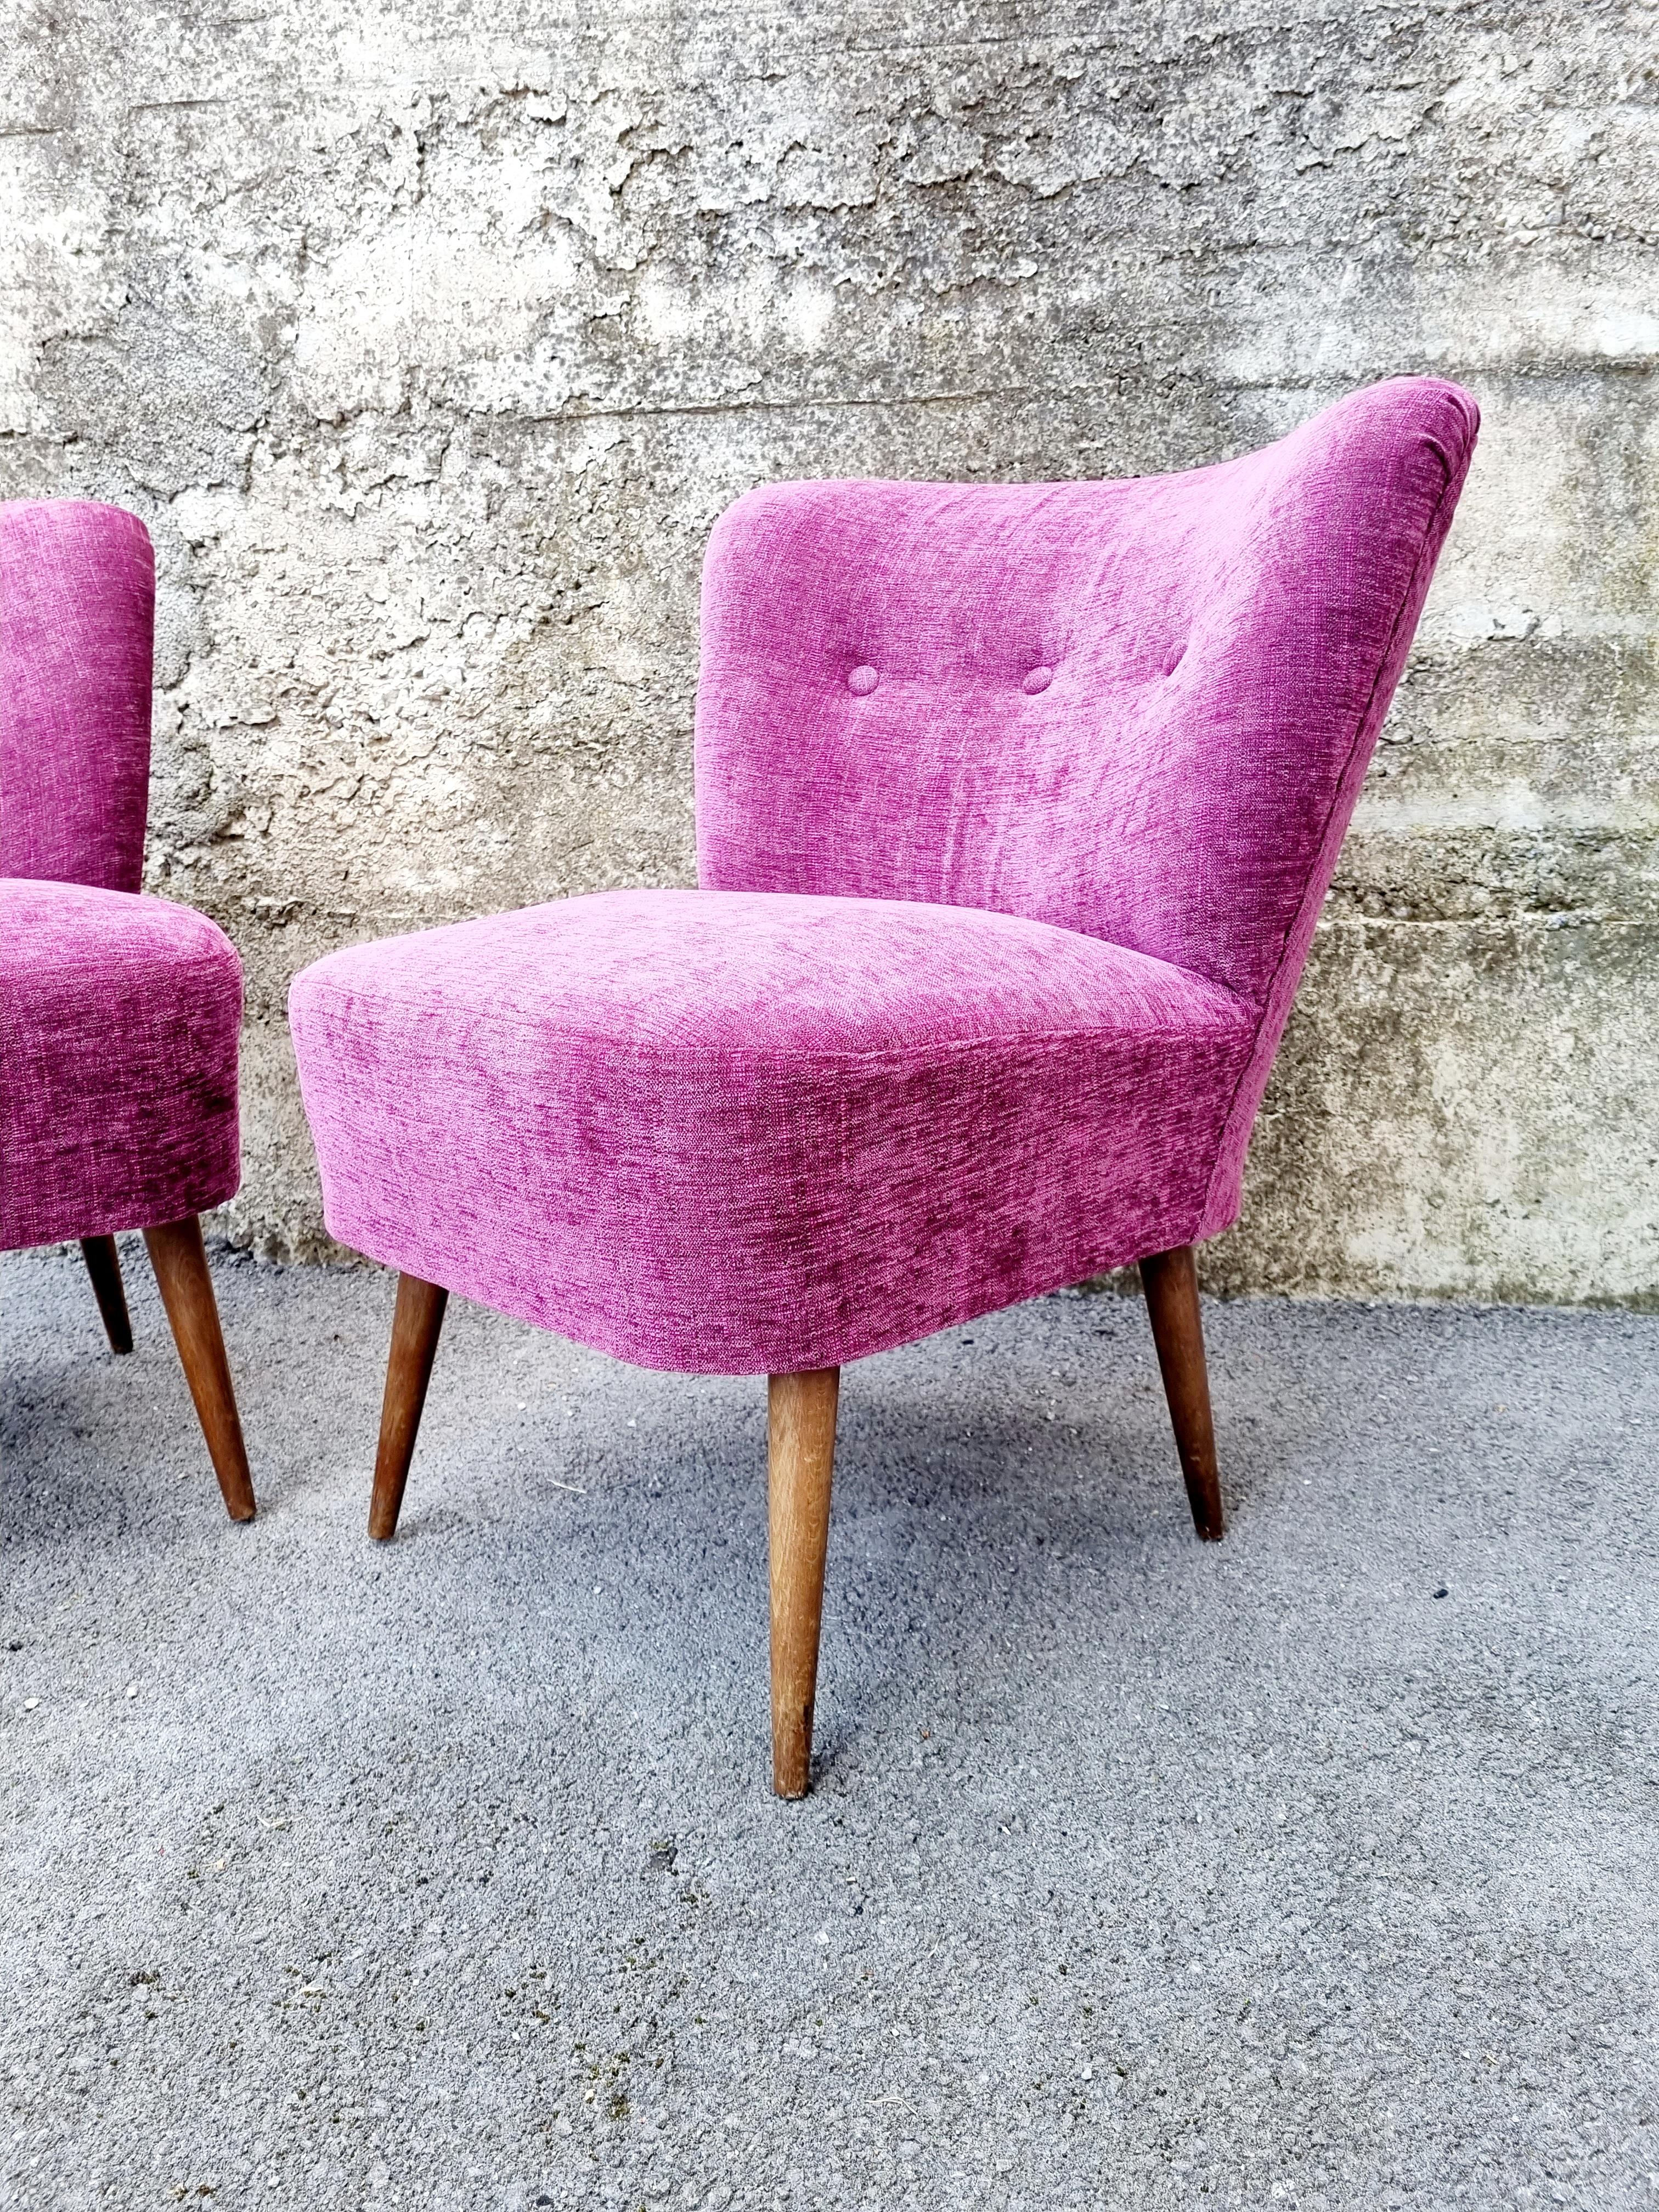 Les chaises cocktails Mid Century Modern ont été fabriquées dans les années 60, avec un design scandinave.
Ces magnifiques chaises créeront une charmante atmosphère vintage dans n'importe quelle pièce de votre maison. Très rétro et très belle